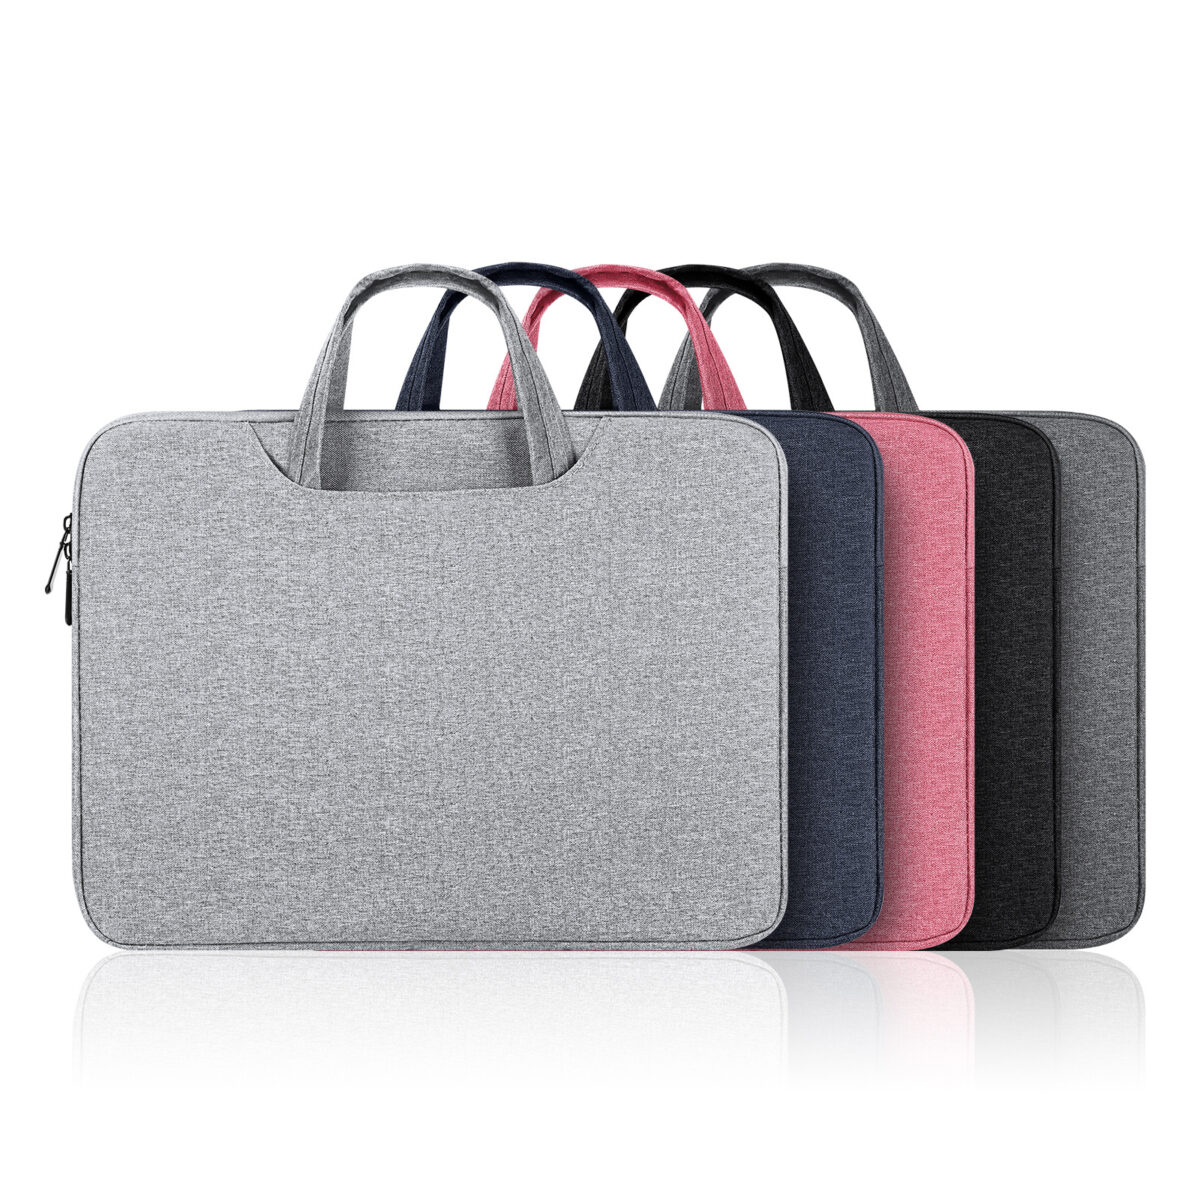 LBTB Series Handbag for Laptop, MacBook, Notebook, Tablet